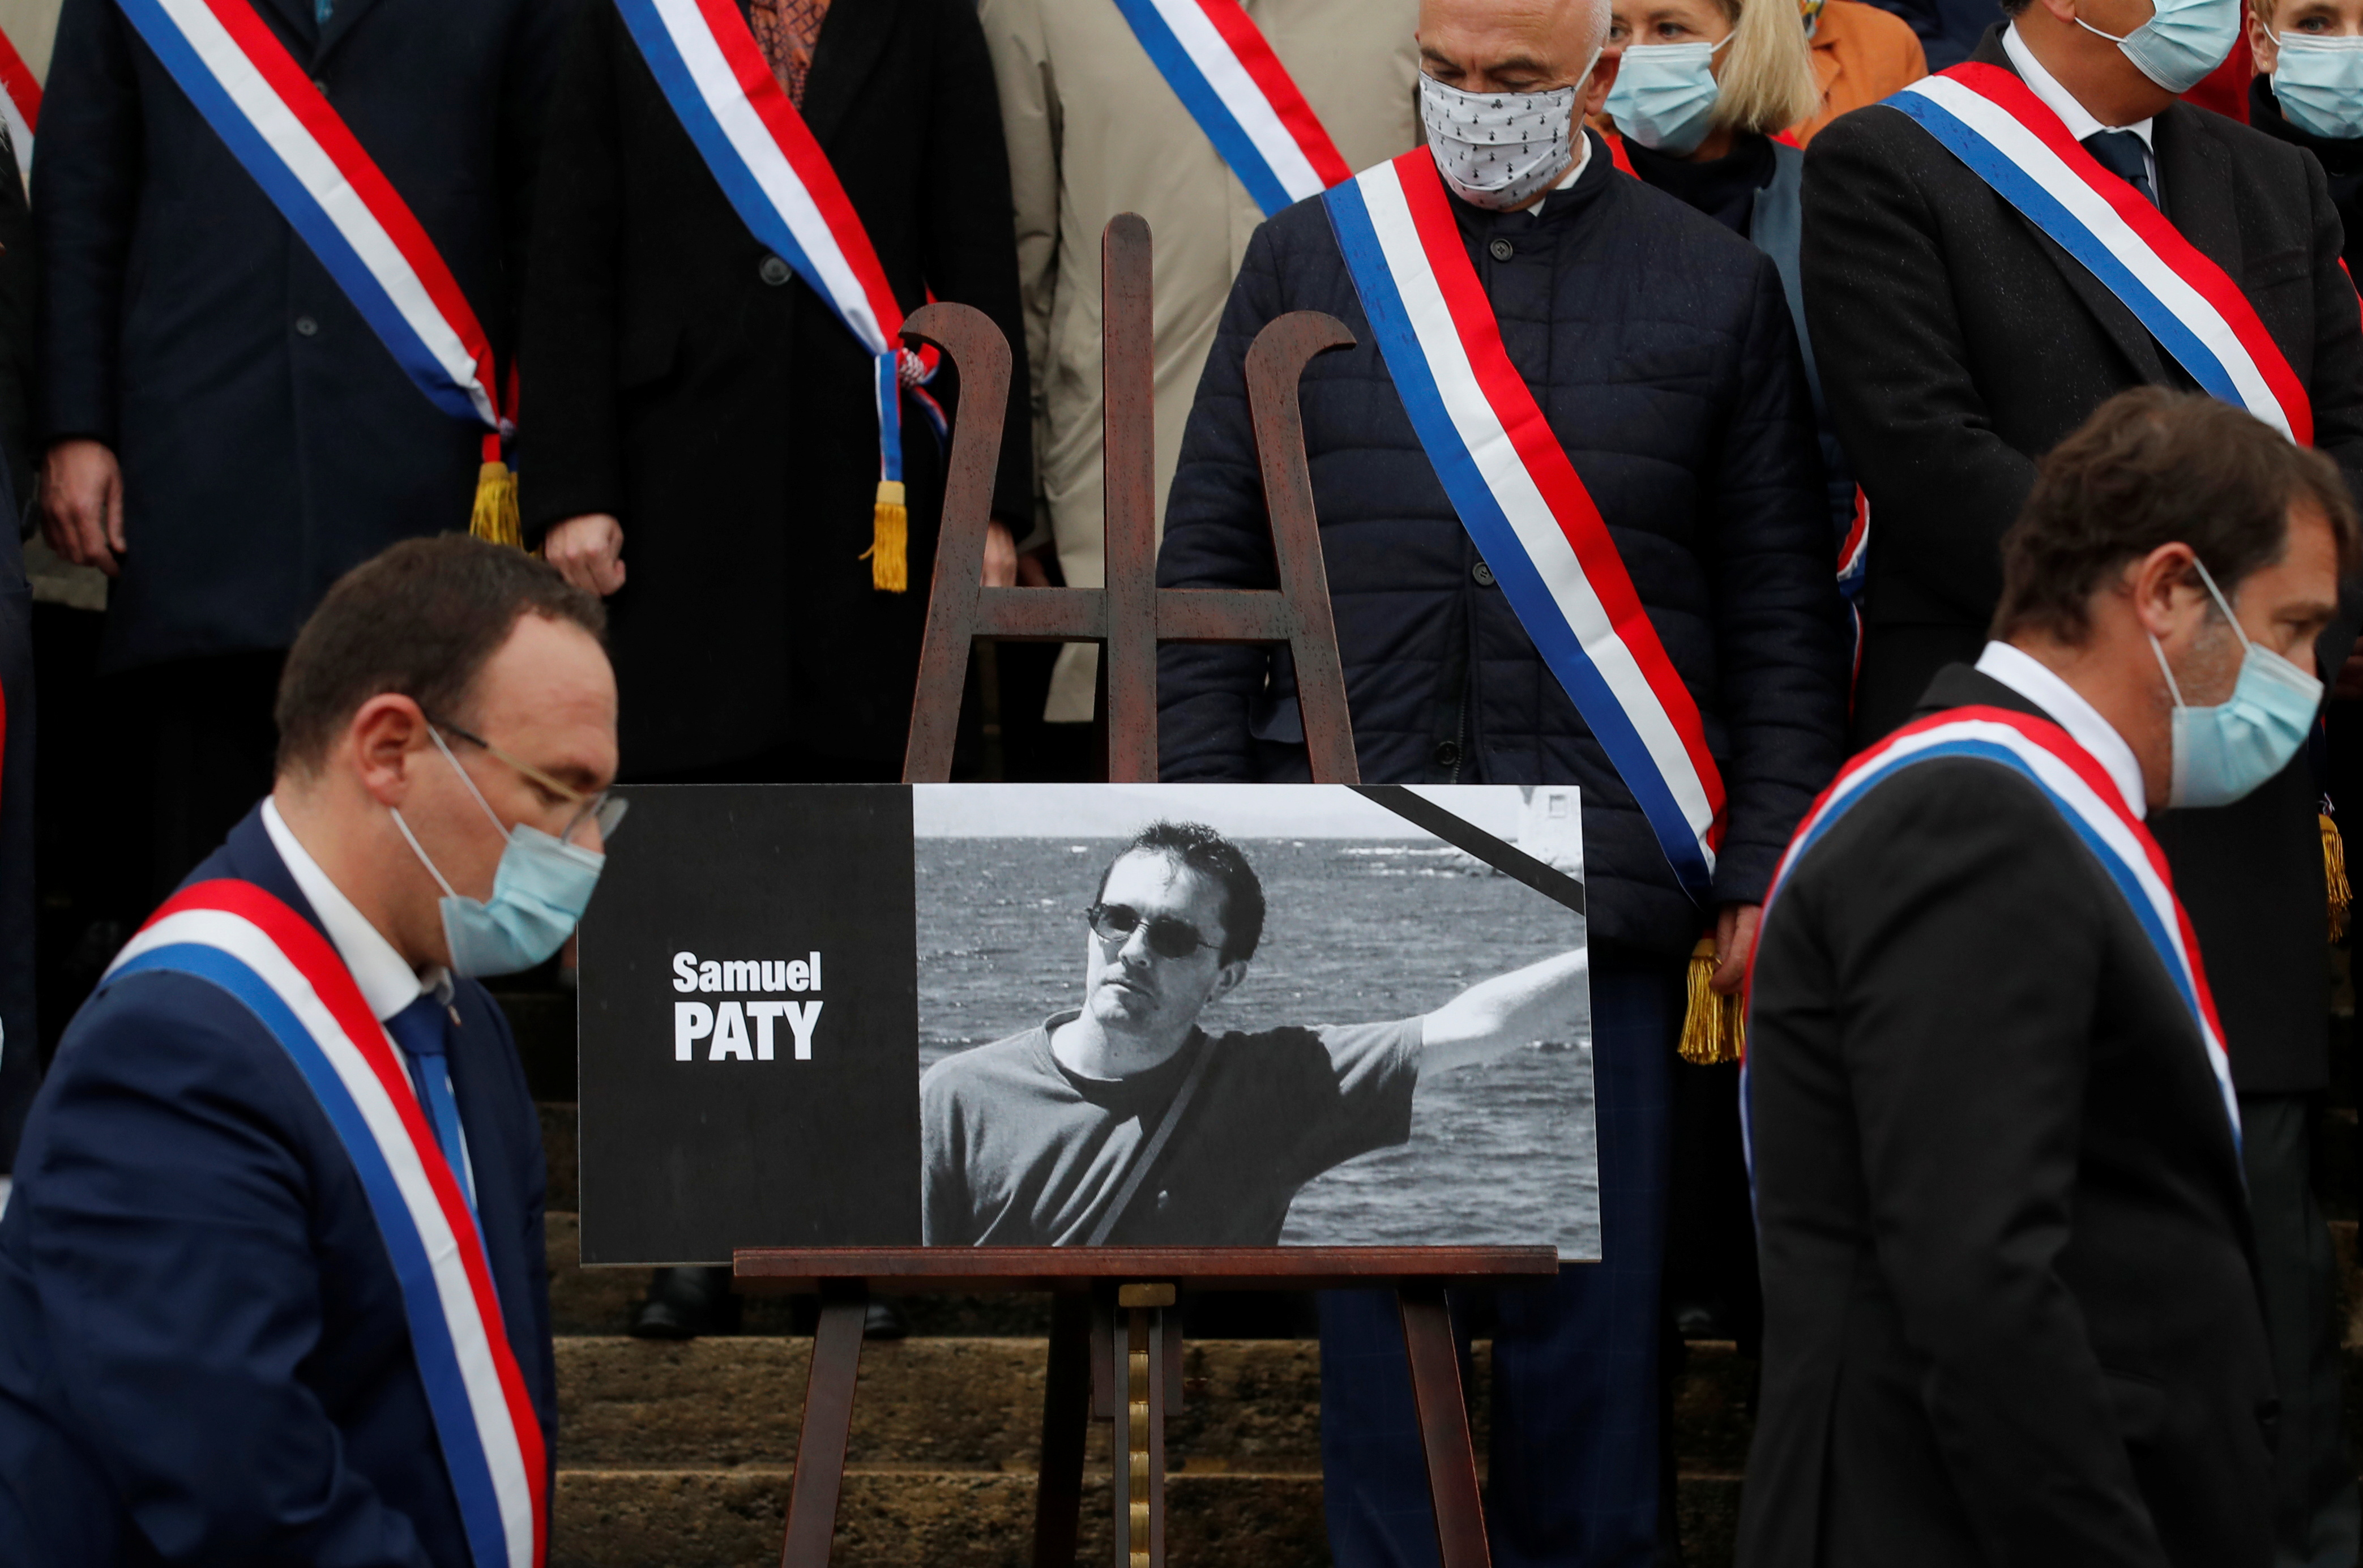 Los miembros del parlamento salen después de un homenaje a Samuel Paty, el profesor francés que fue decapitado en las calles del suburbio parisino de Conflans-Sainte-Honorine, el 20 de octubre de 2020 (REUTERS/Gonzalo Fuentes)